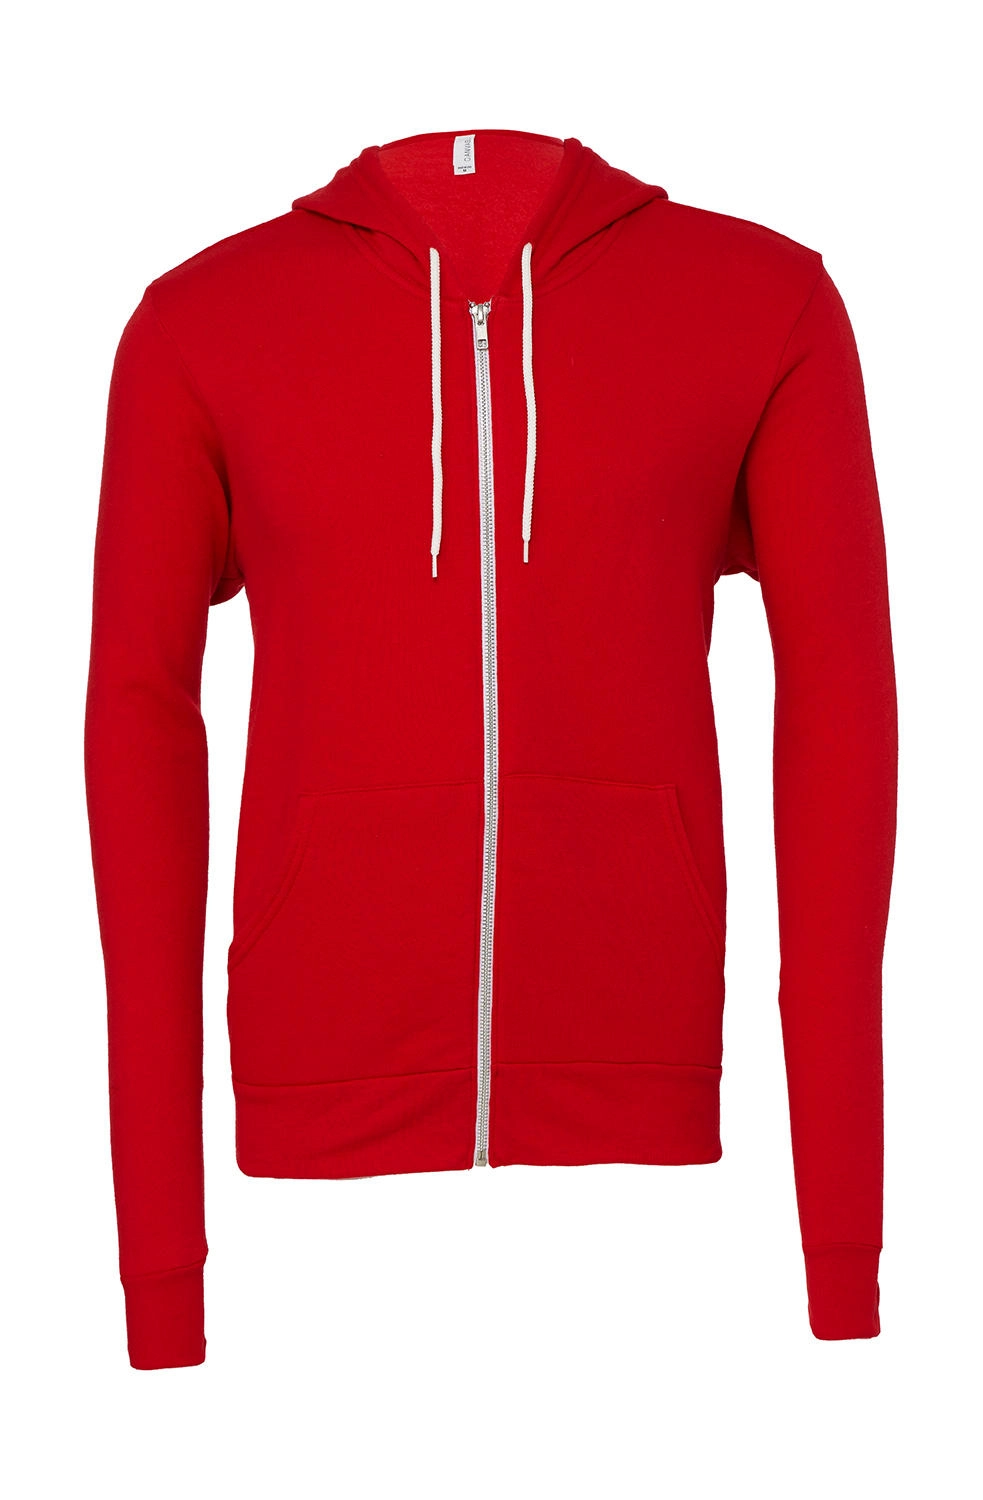 Unisex Poly-Cotton Full Zip Hoodie zum Besticken und Bedrucken in der Farbe Red mit Ihren Logo, Schriftzug oder Motiv.